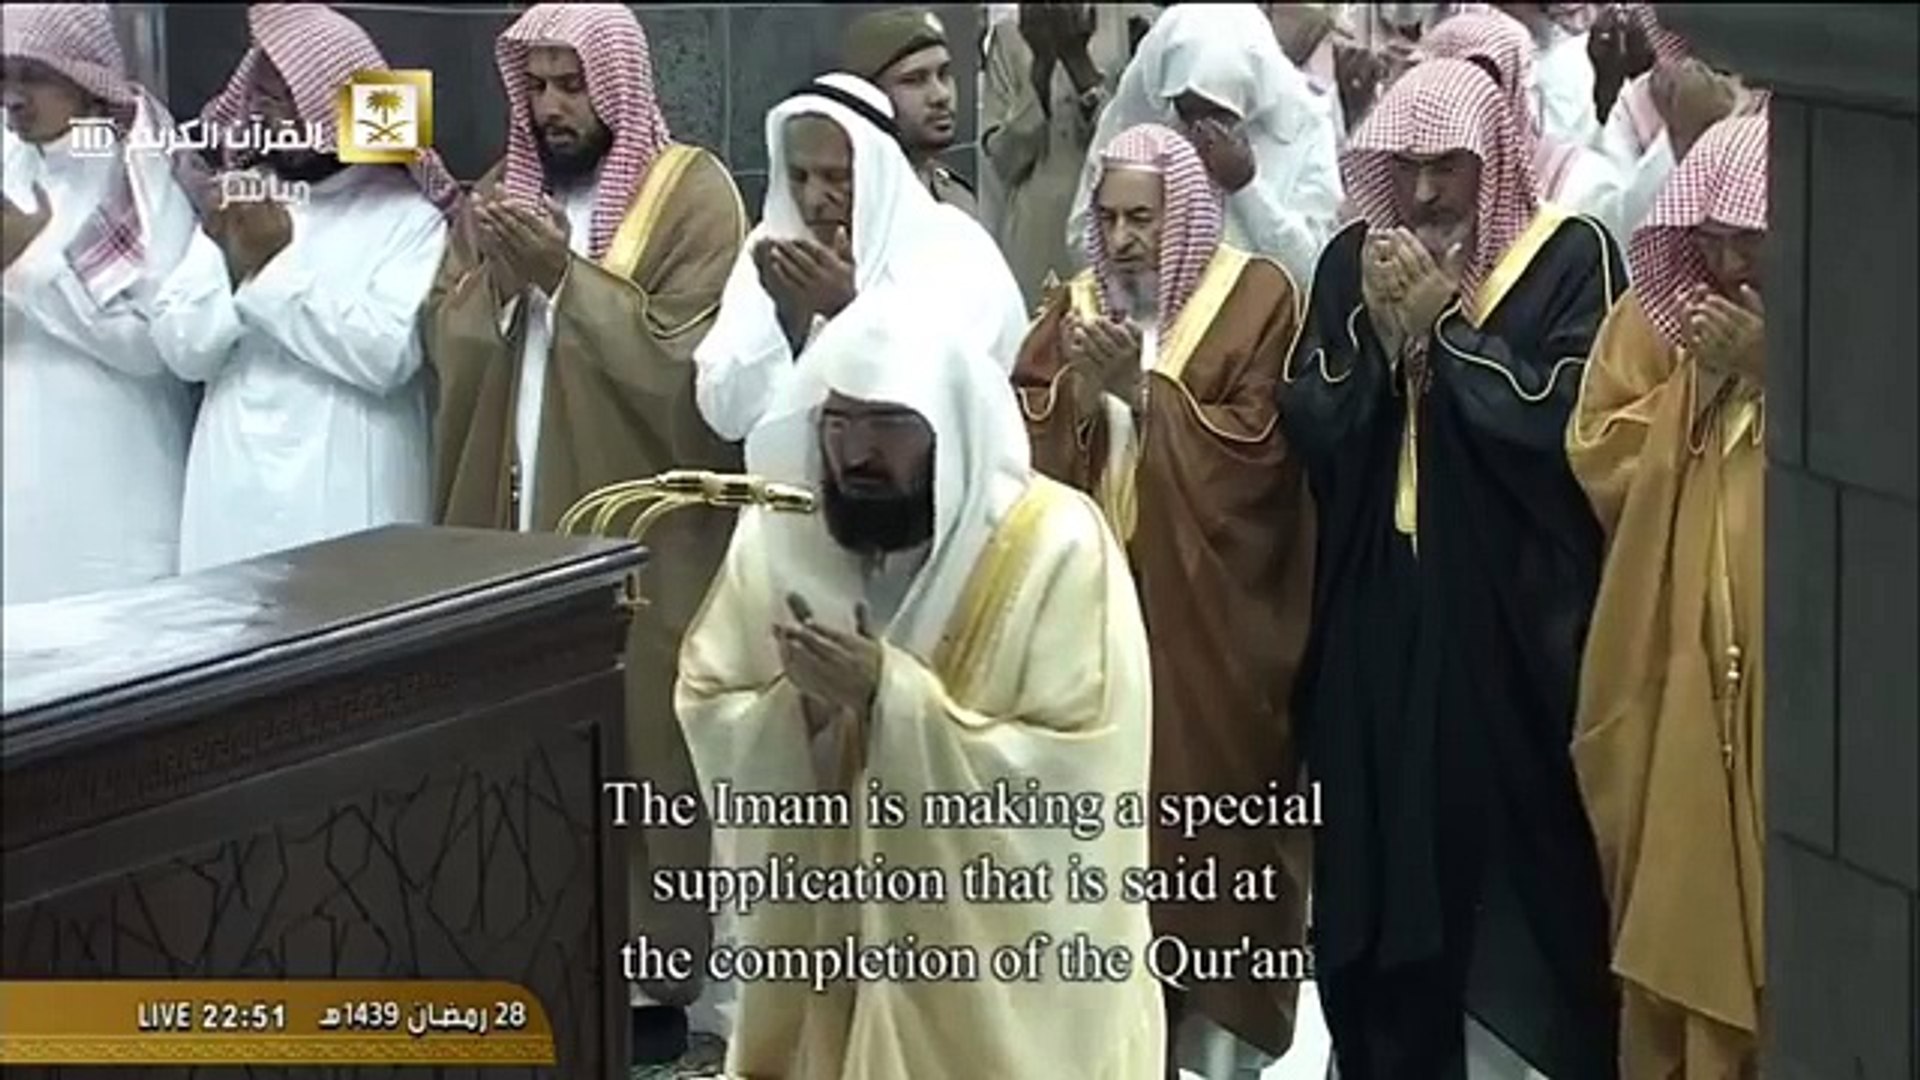 دعاء ختم القرآن 1439 اخر ليلة 29 رمضان - عبدالرحمن السديس- مكة - فيديو  Dailymotion